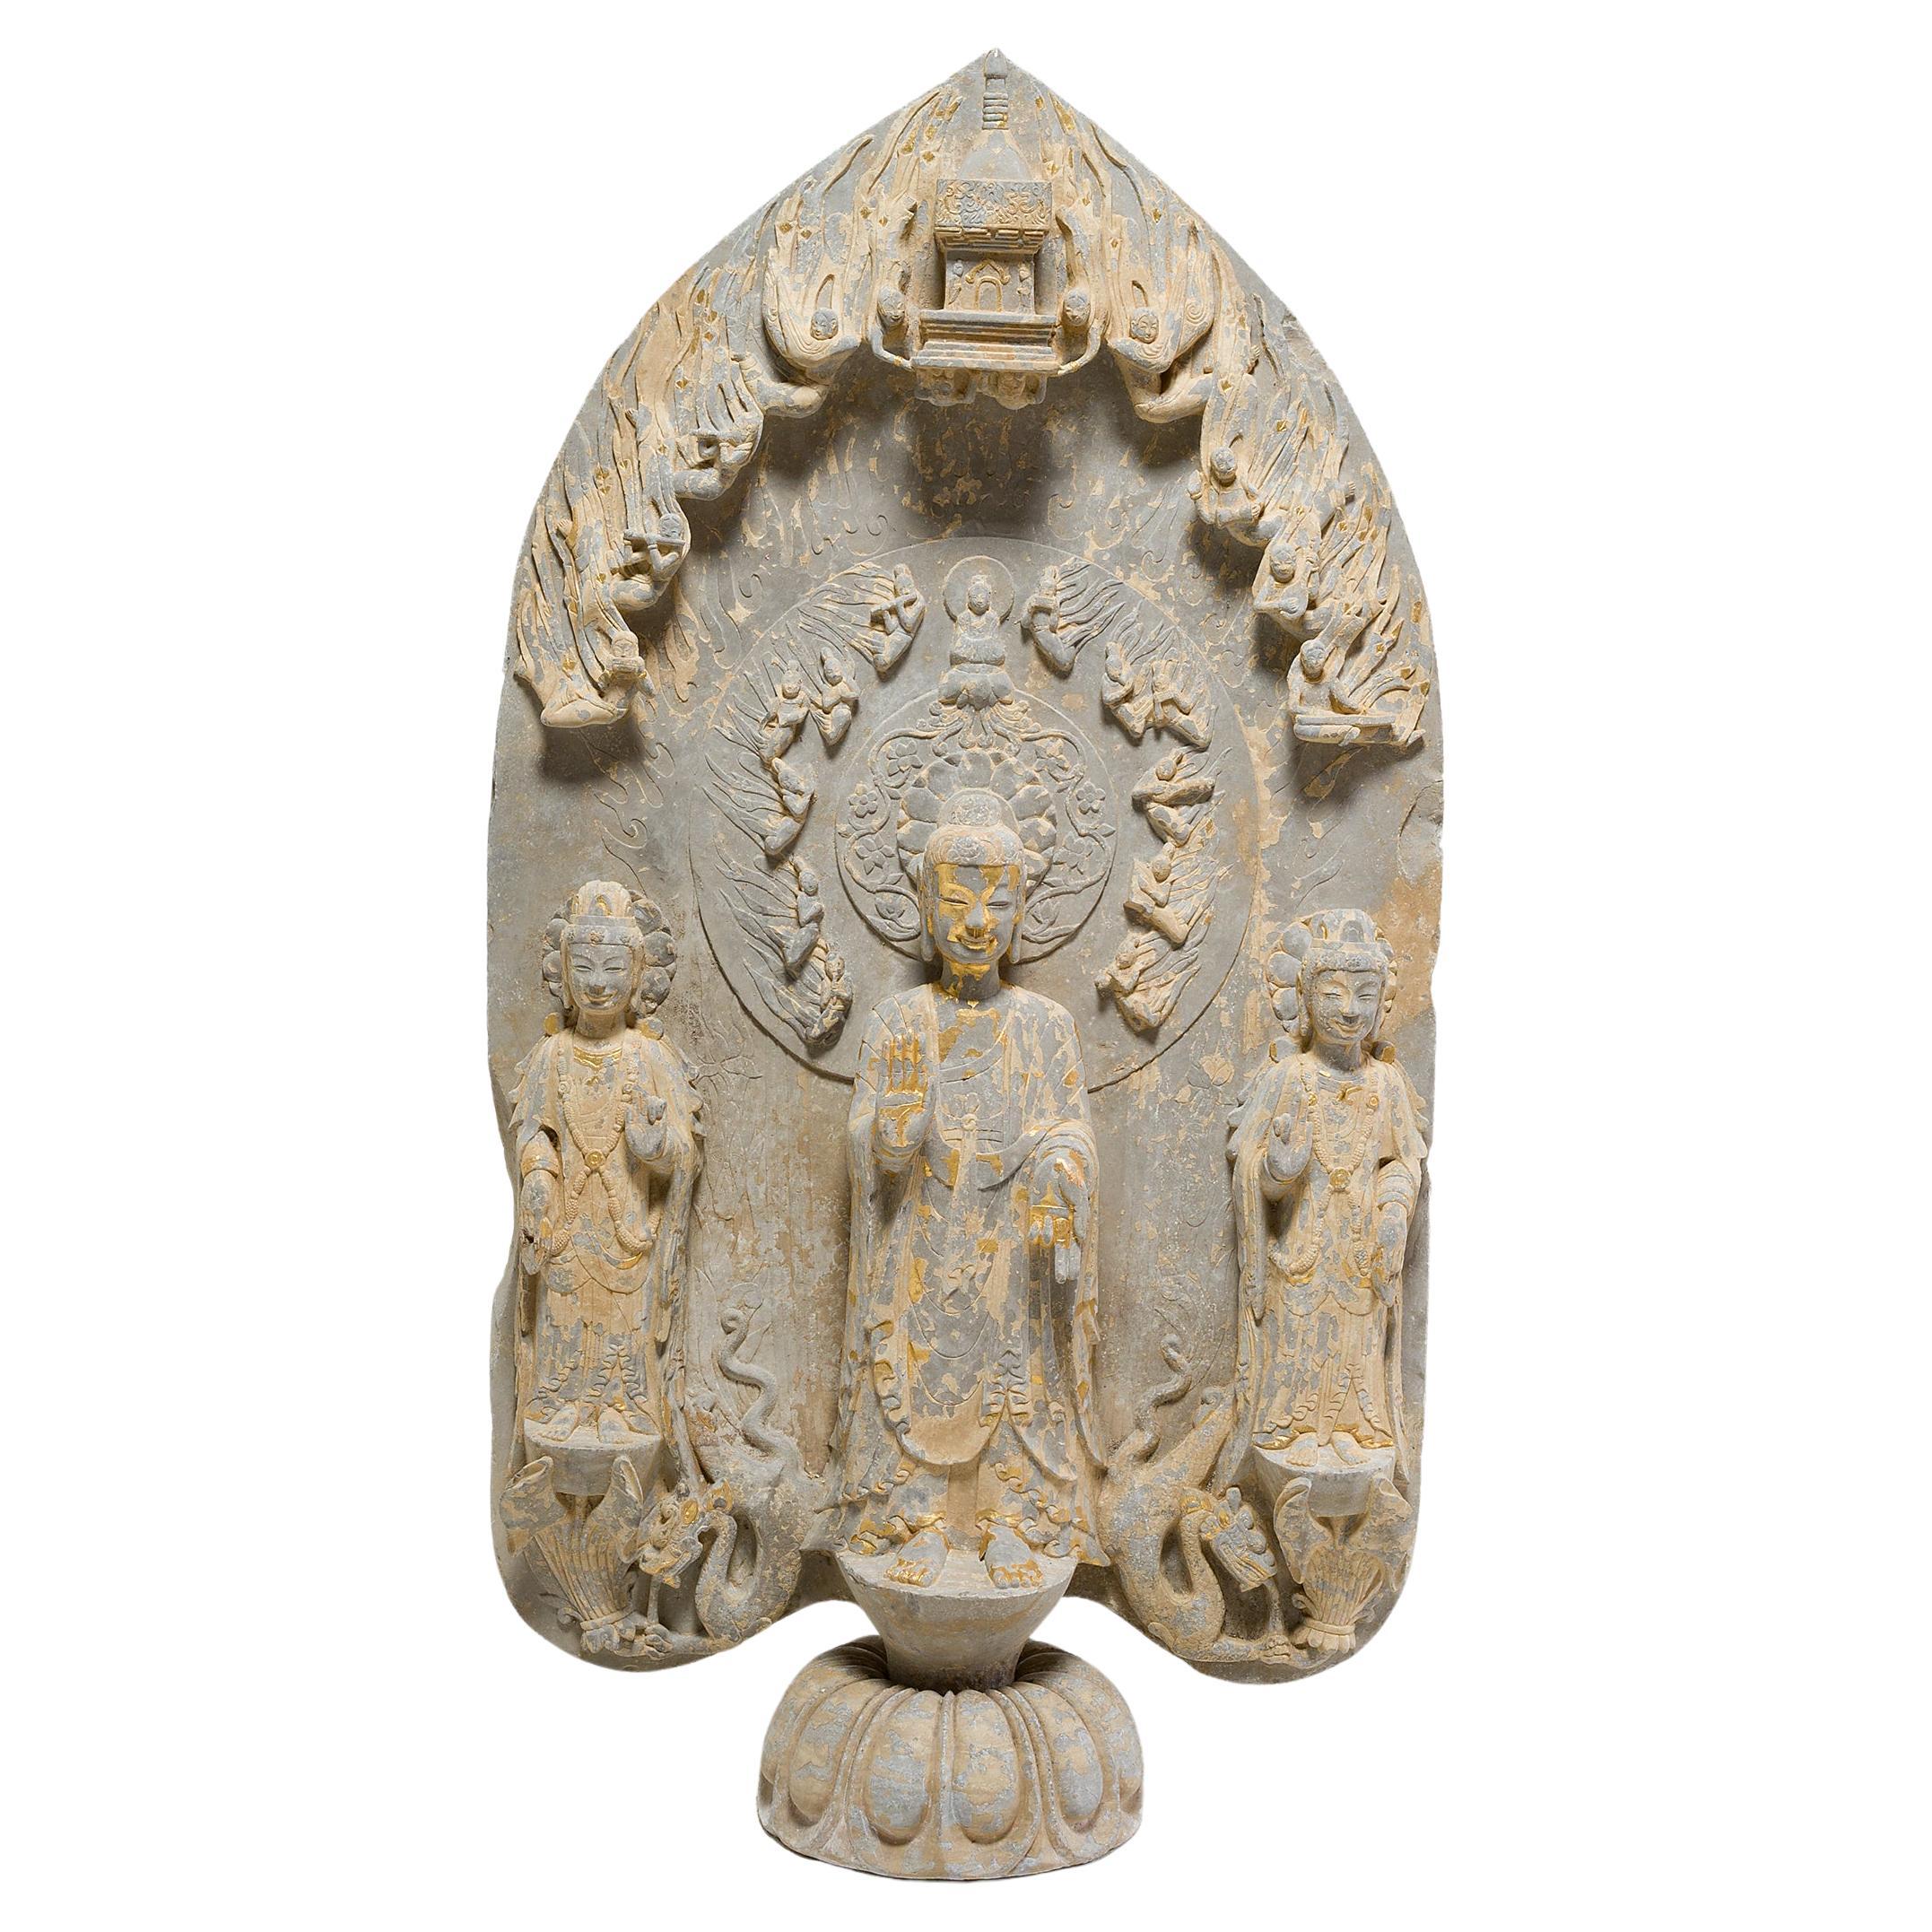 Chinesischer vergoldeter Kalkstein-Stele des Maitreya-Buddha